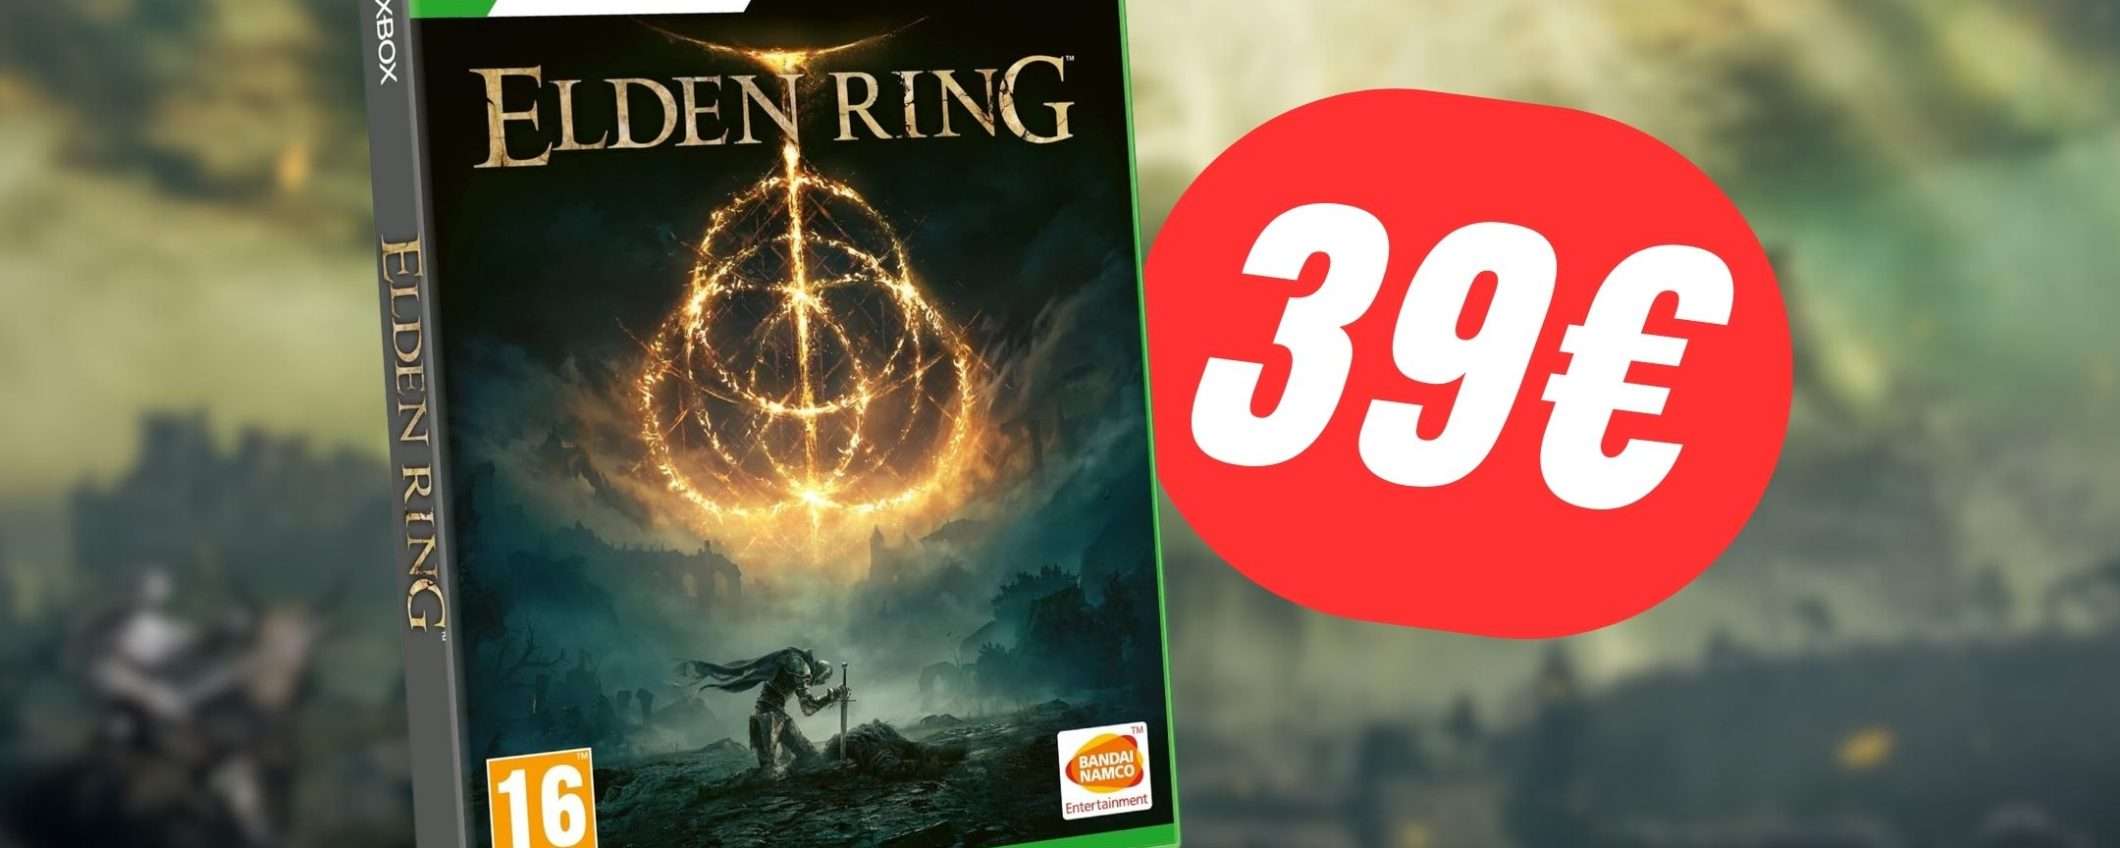 Il Miglior Gioco del 2022 è in sconto: Compra Elden Ring per Xbox a 39,90€!